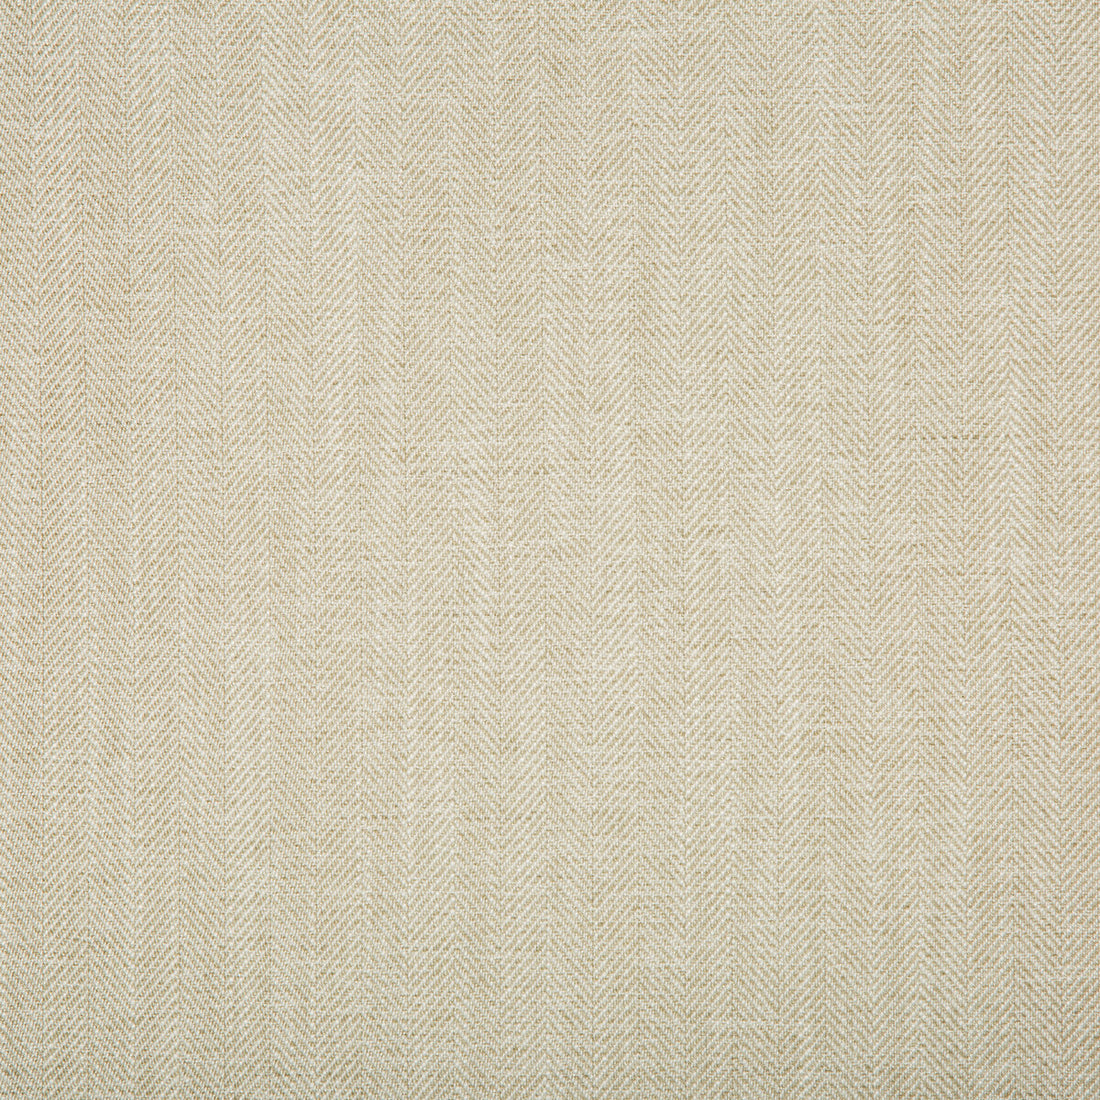 Kravet Basics fabric in 35782-116 color - pattern 35782.116.0 - by Kravet Basics